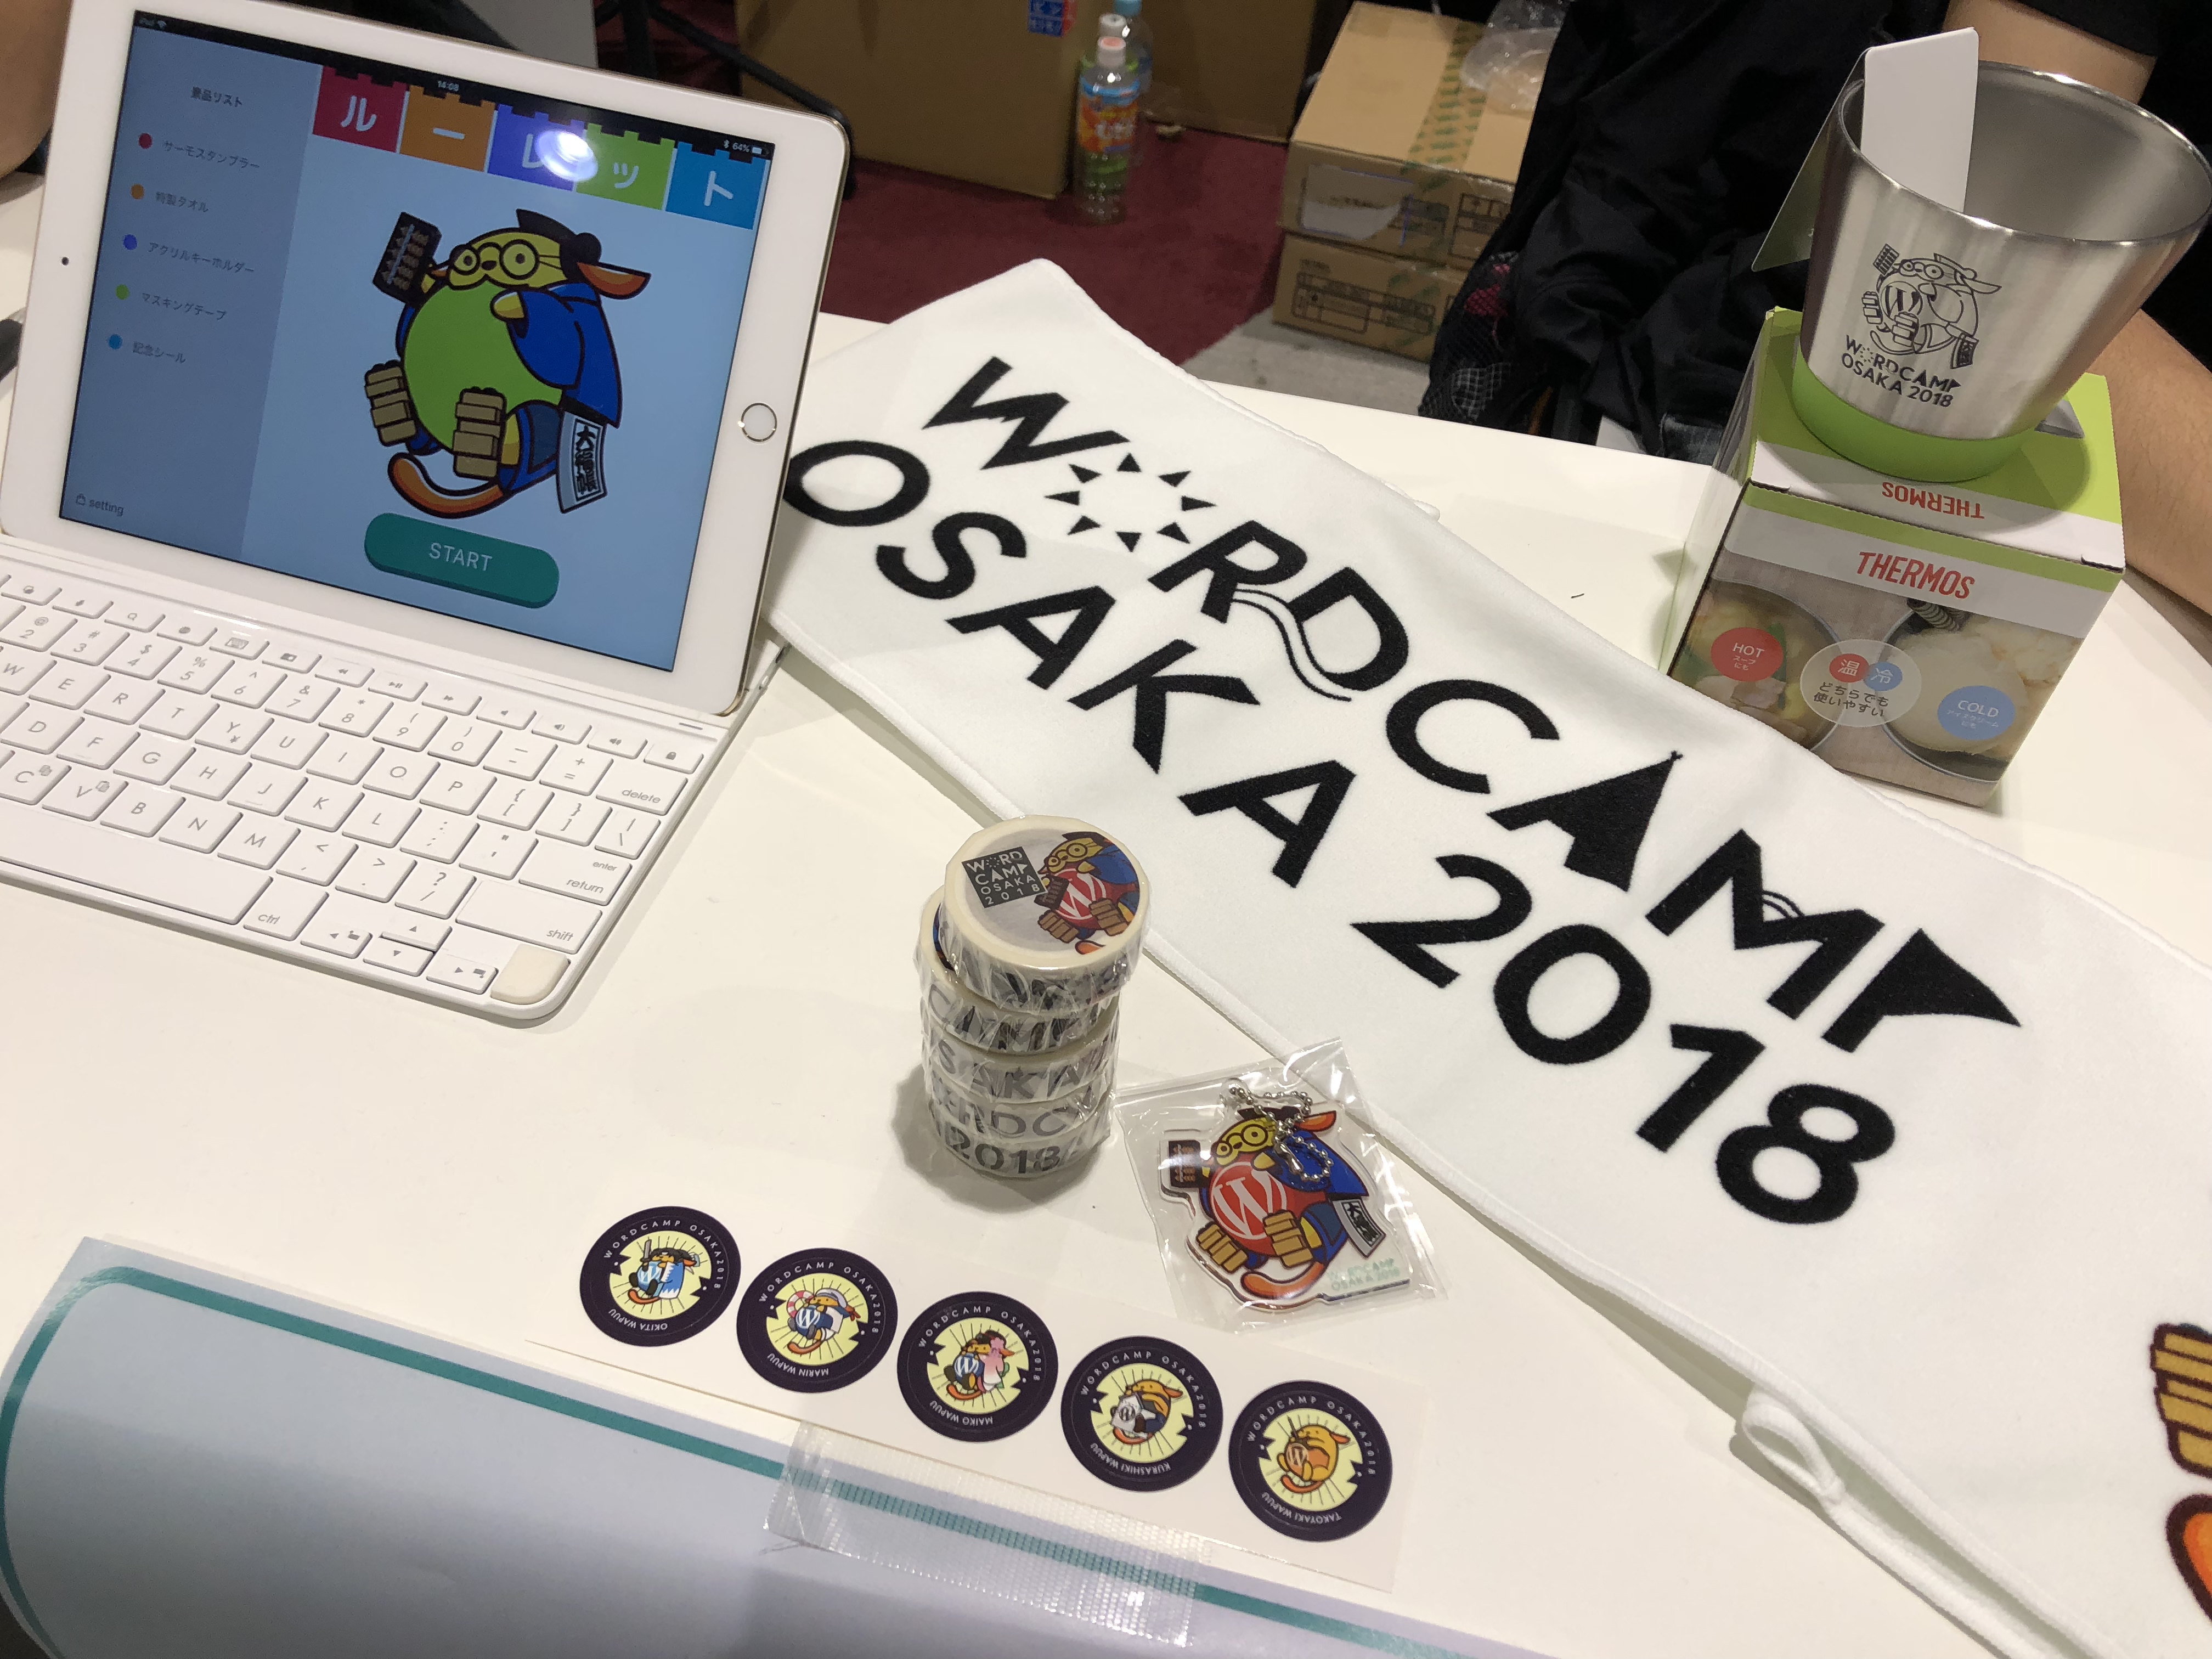 WordCamp Osaka 2018 に参加してきました #wcosaka